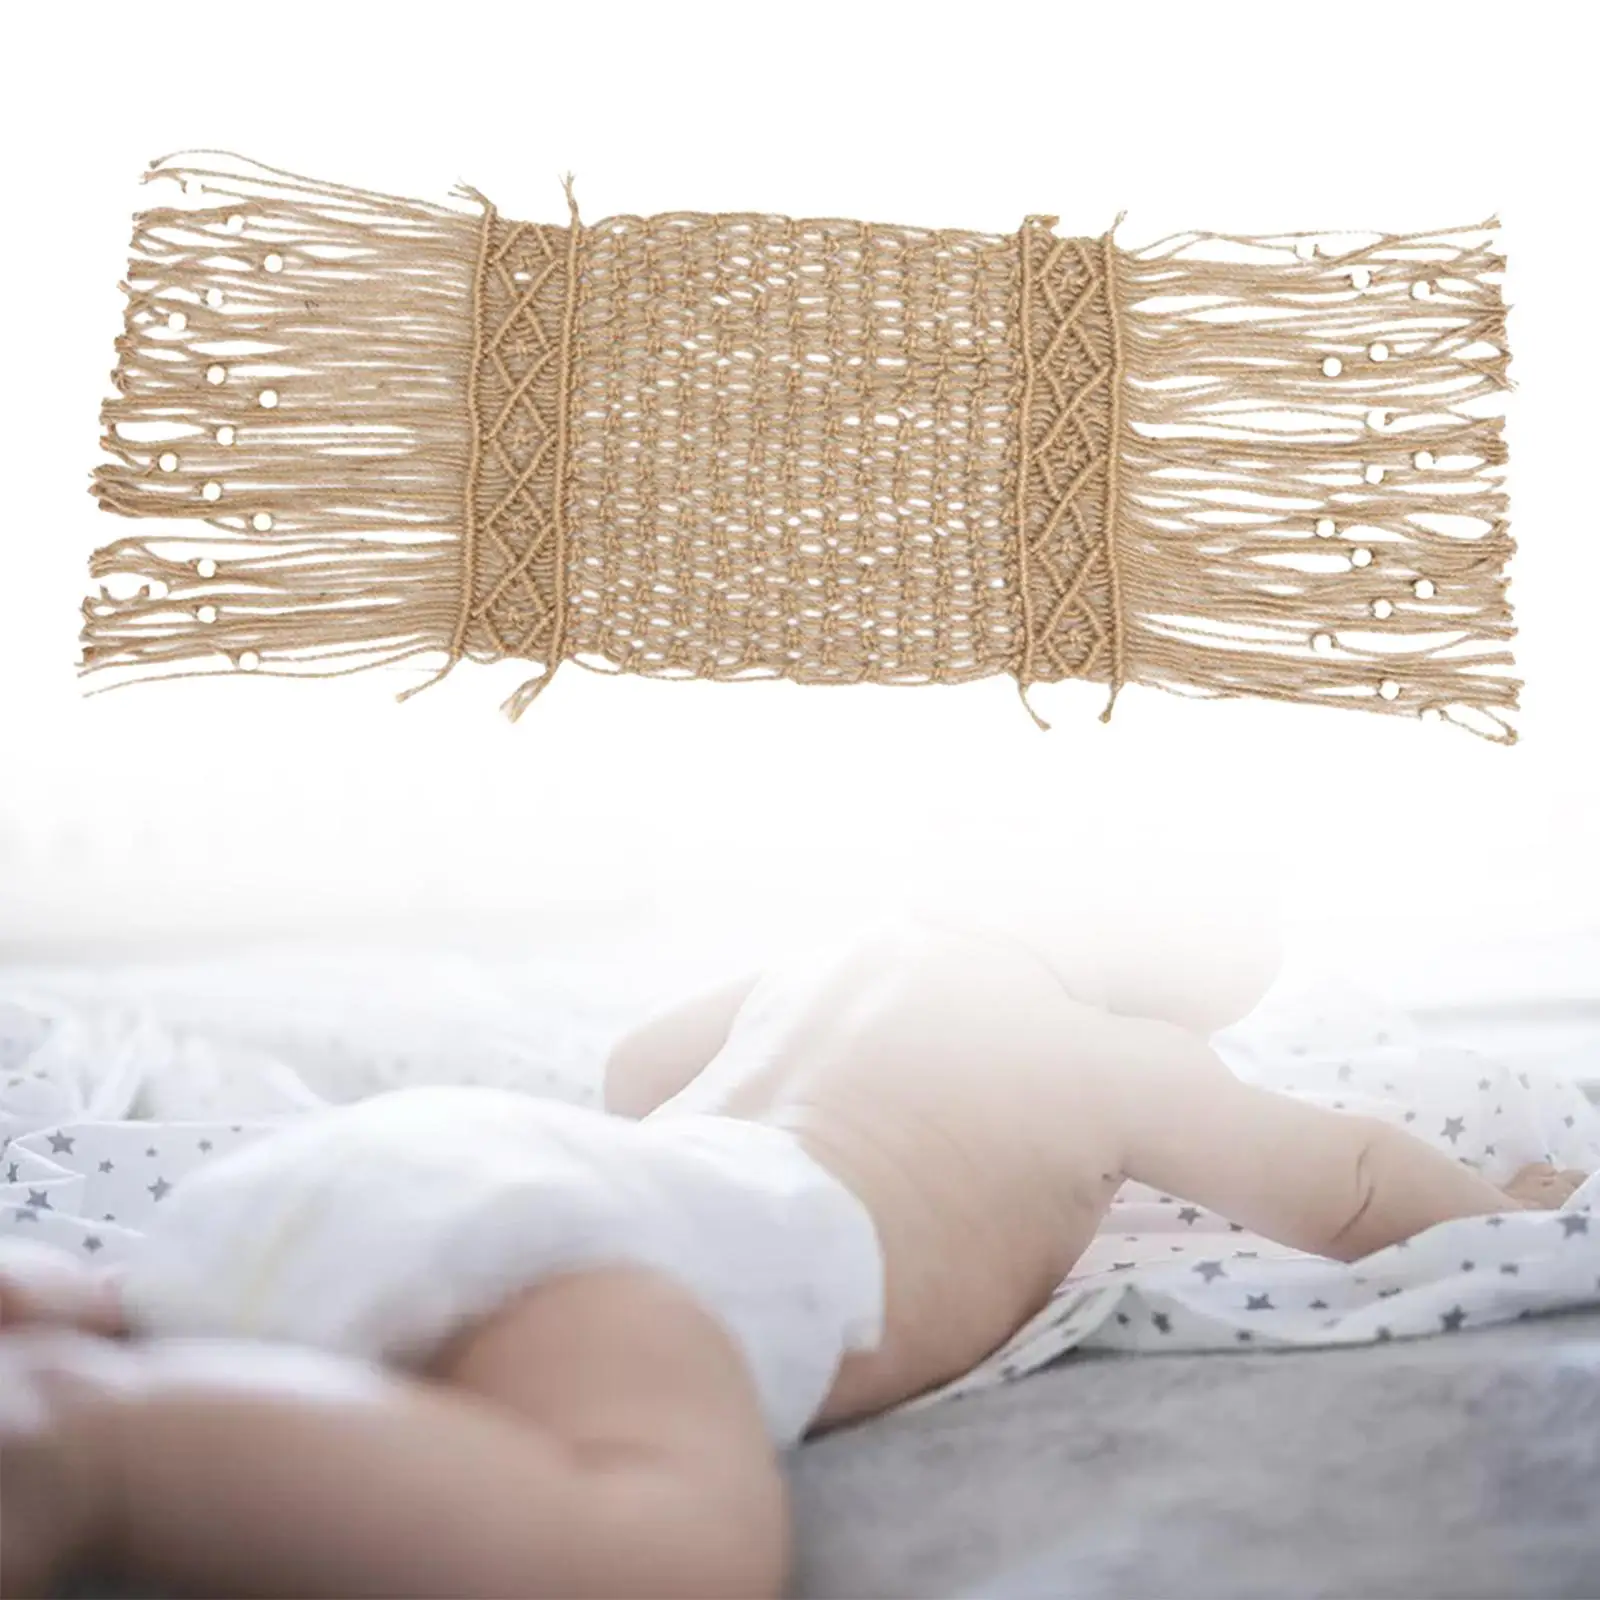 Newborn Photography Props Knitting Tassel Blanket for Studio